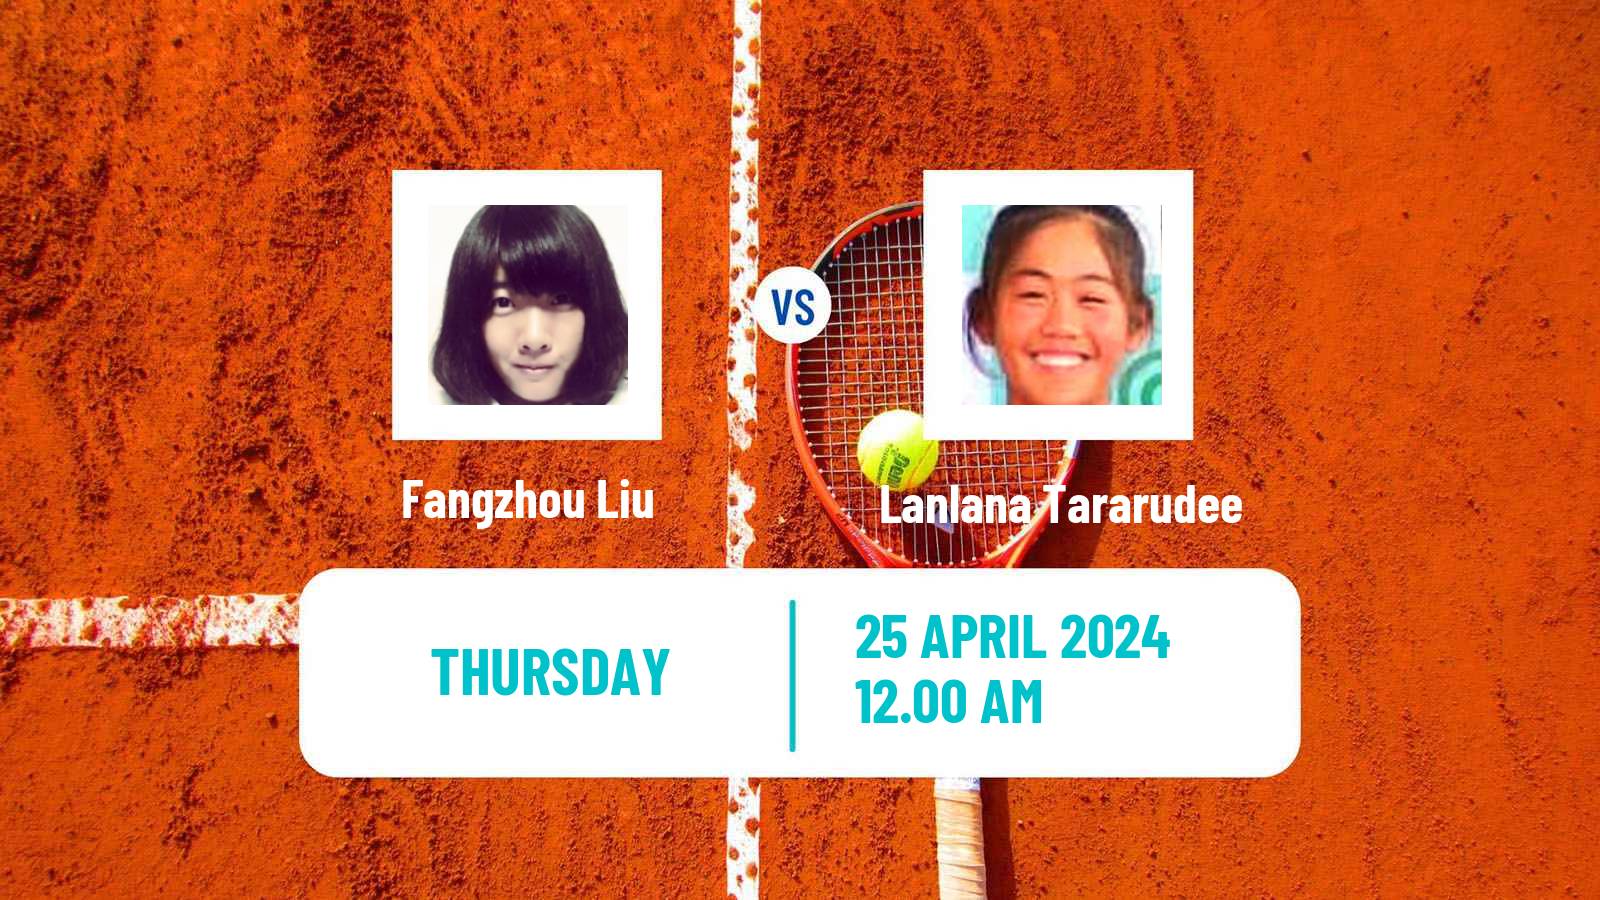 Tennis ITF W50 Wuning Women Fangzhou Liu - Lanlana Tararudee